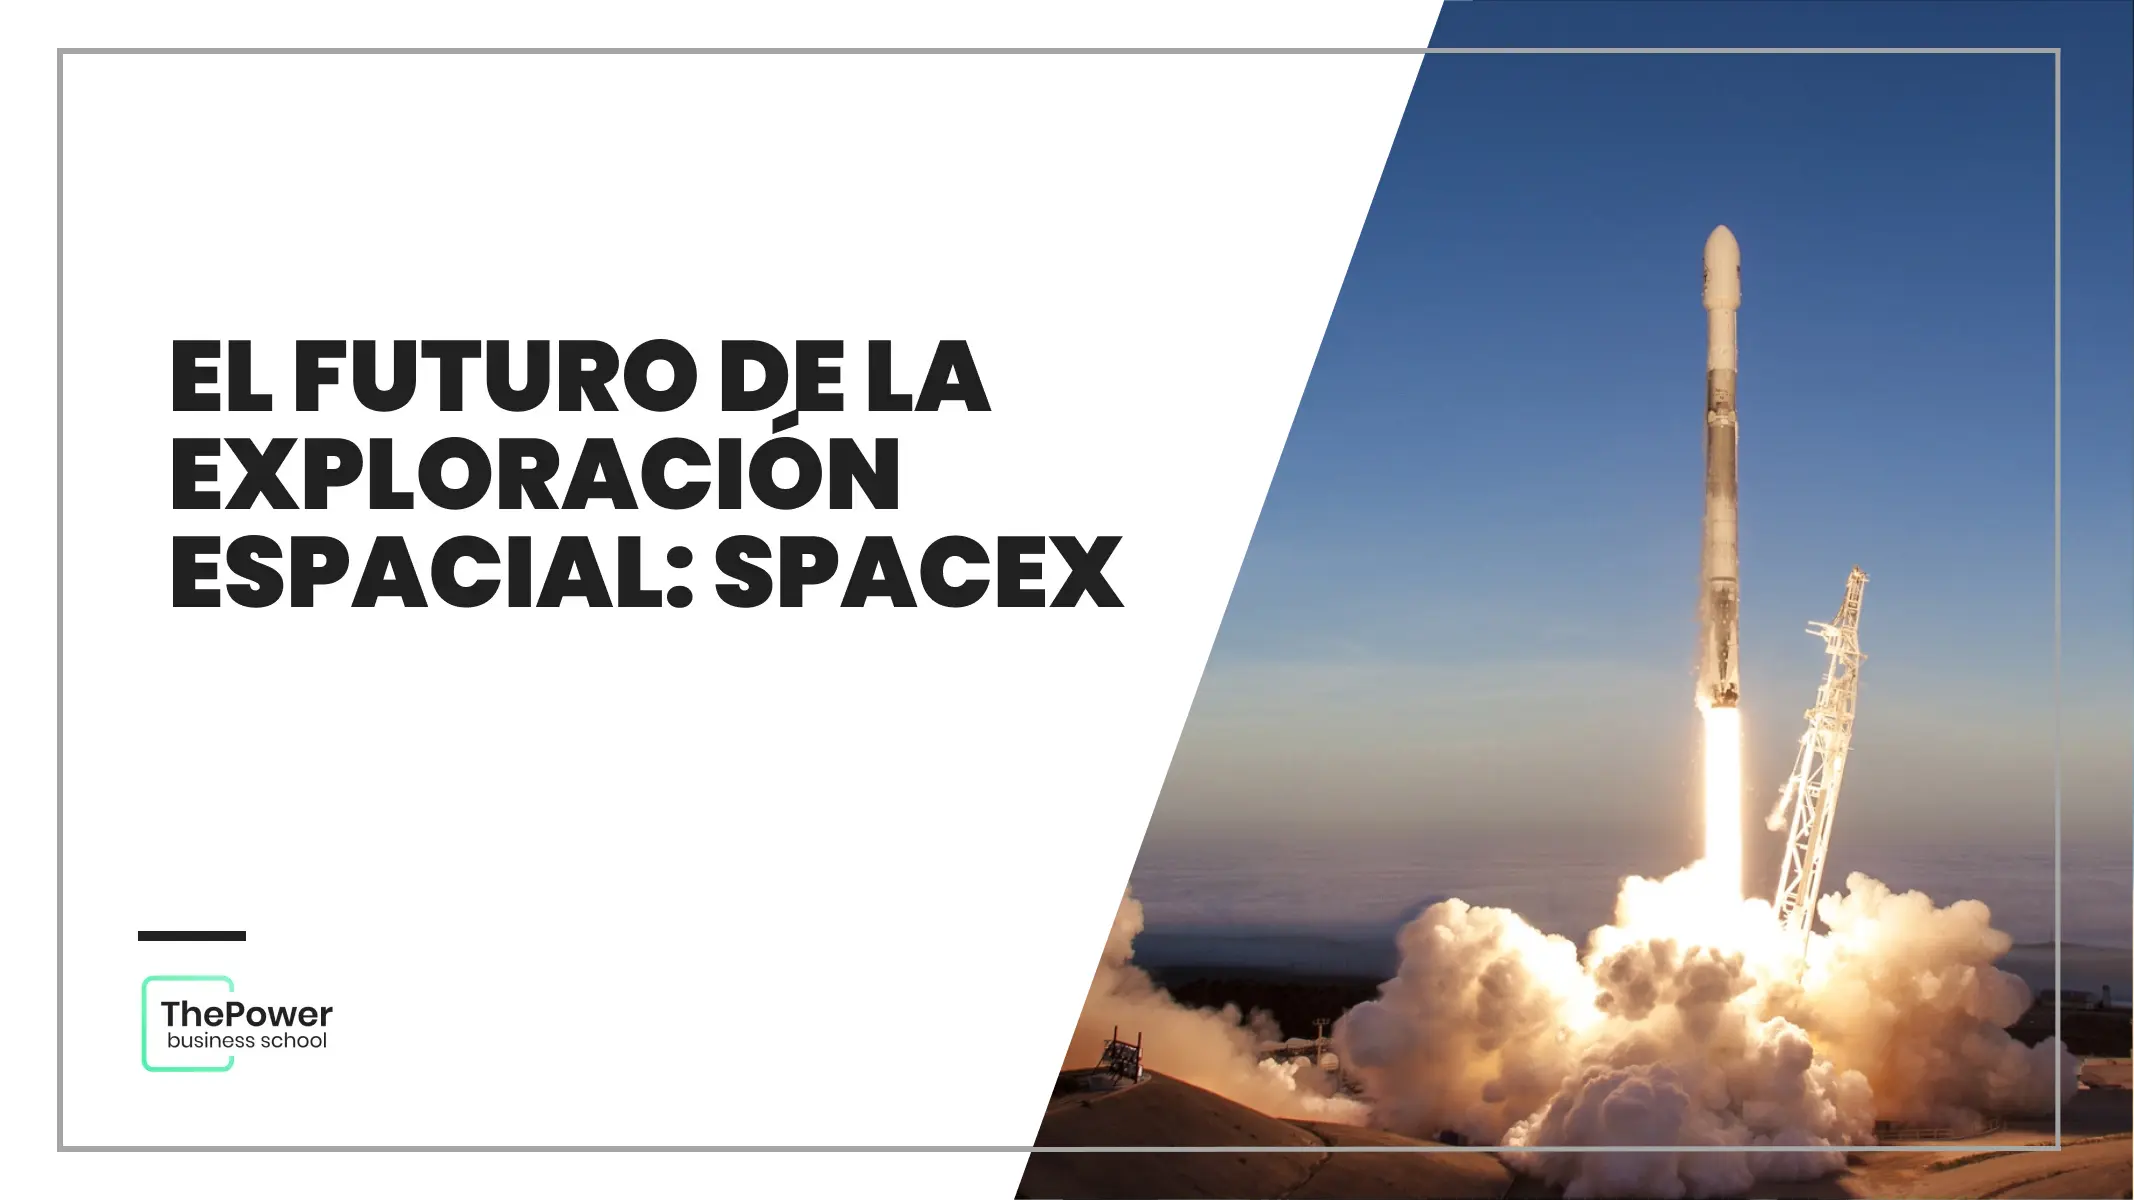 El futuro de la exploración espacial: SpaceX